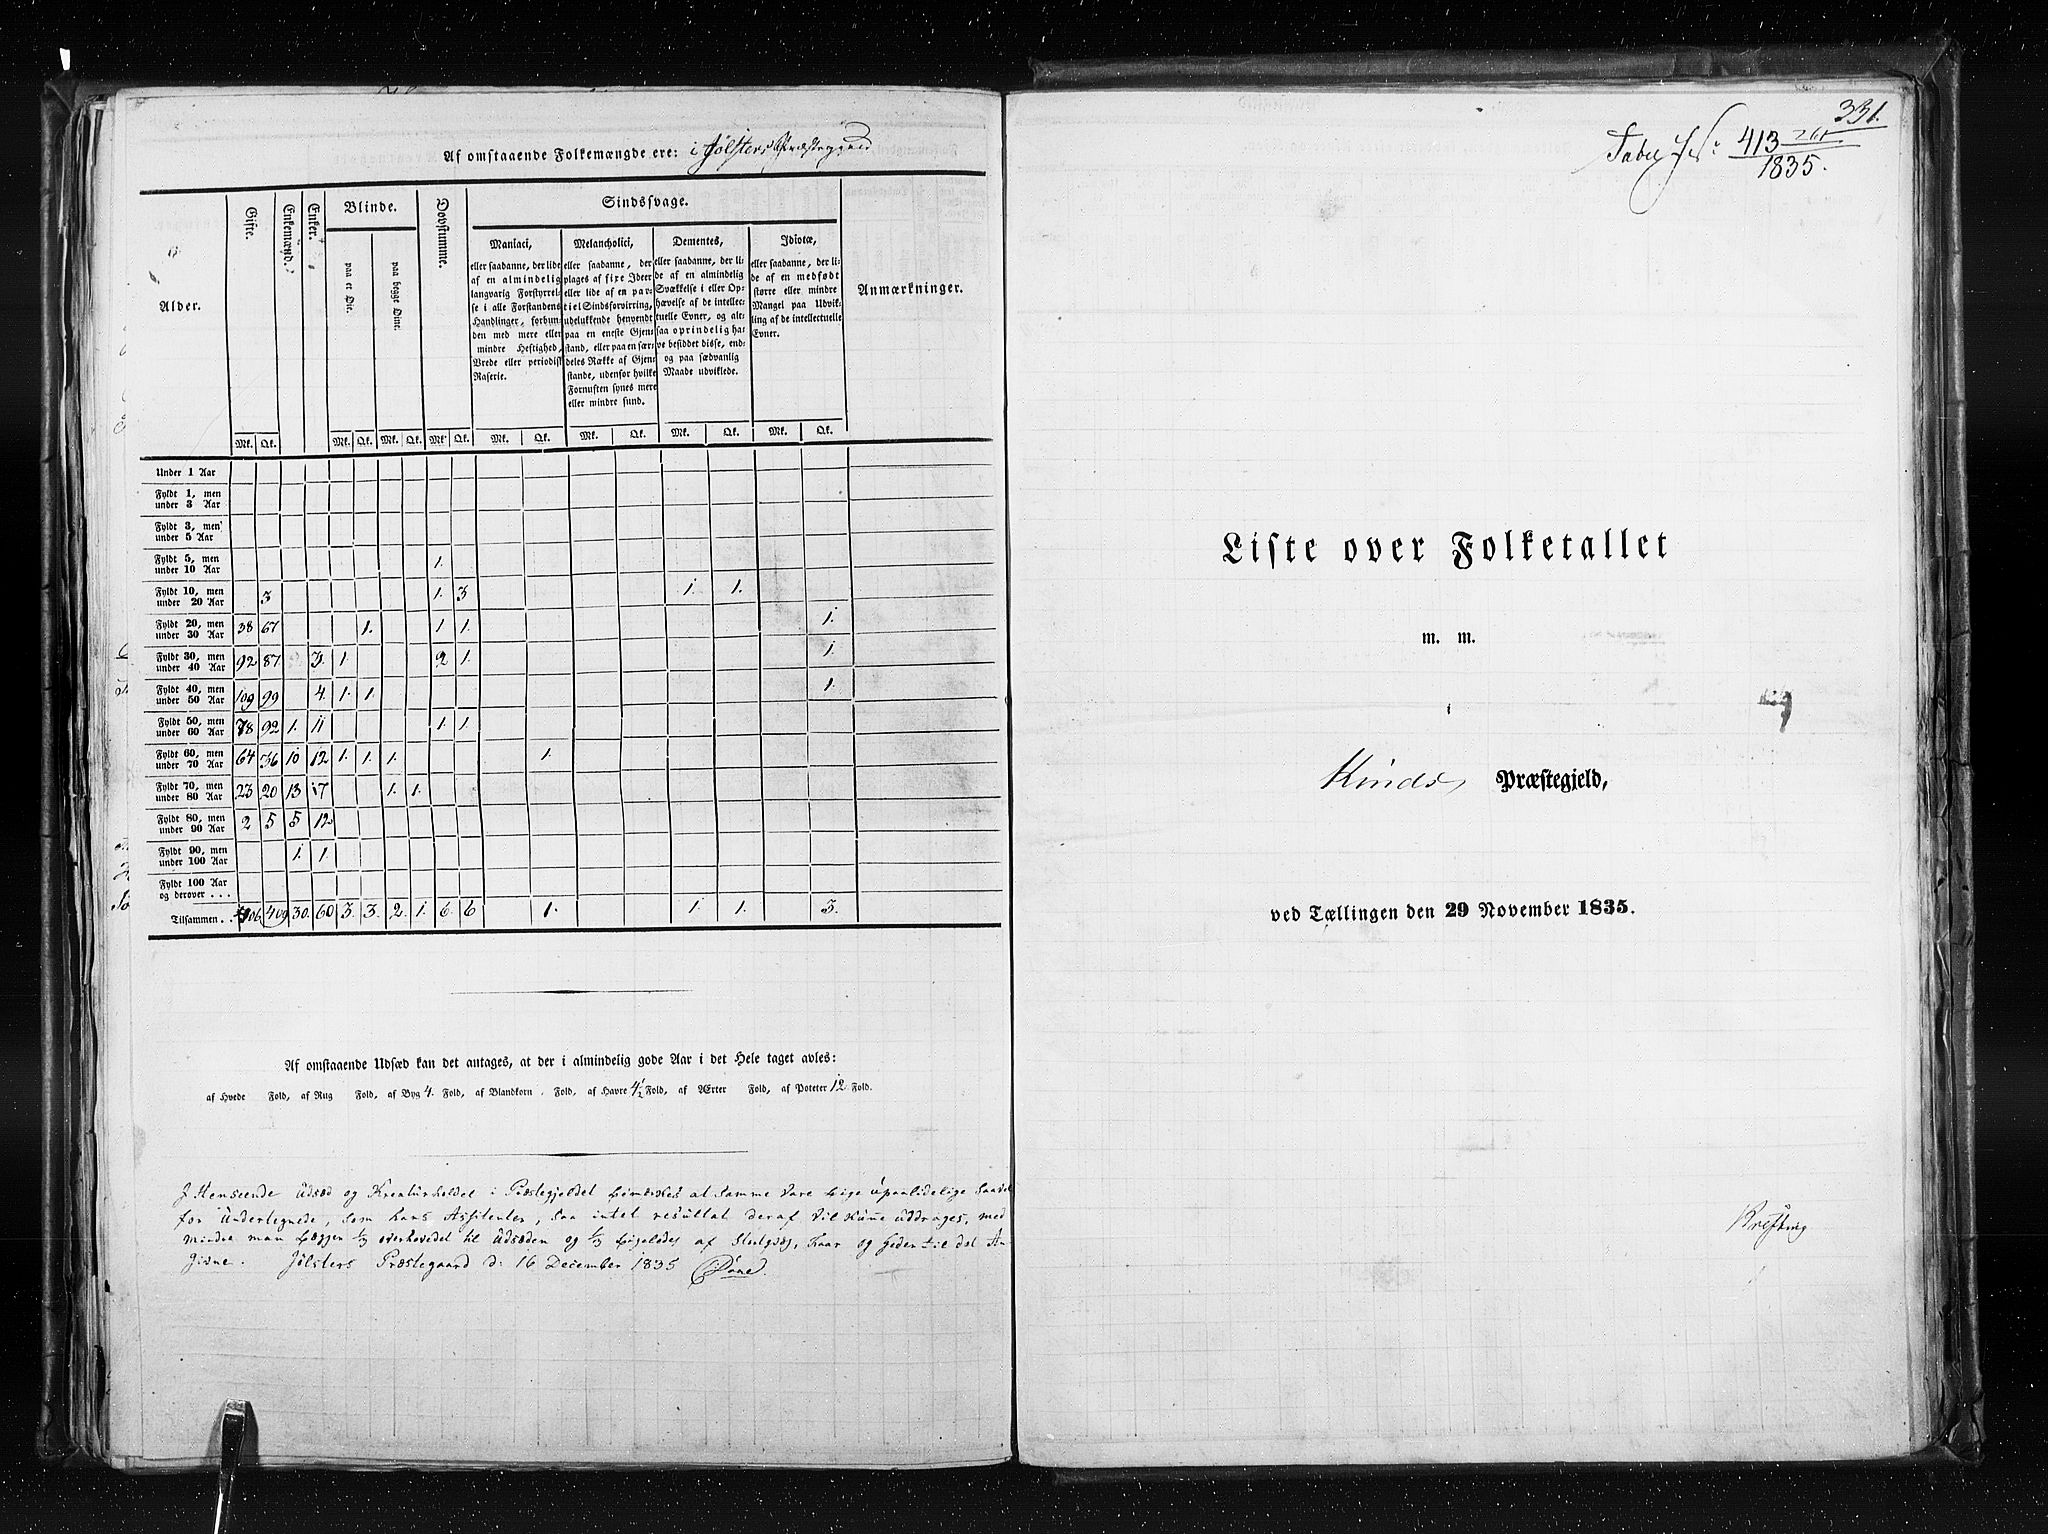 RA, Census 1835, vol. 7: Søndre Bergenhus amt og Nordre Bergenhus amt, 1835, p. 331